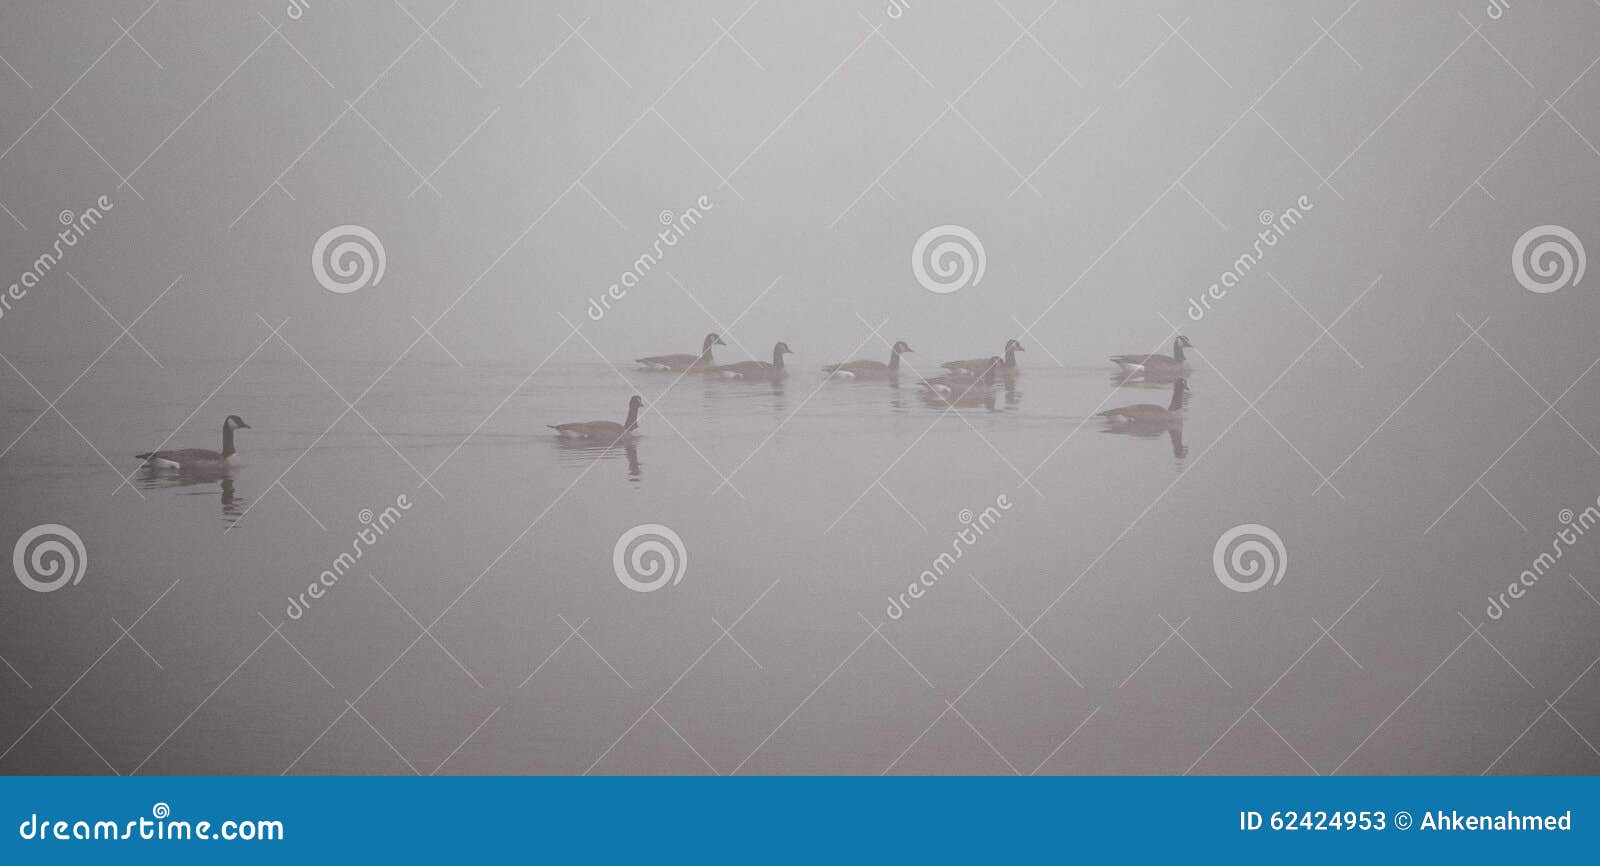 Канадские гусыни плавая в густом тумане. Гоготанье канадских гусынь проводит в и через тяжелый туман и воды в ноябре на их пути на юг